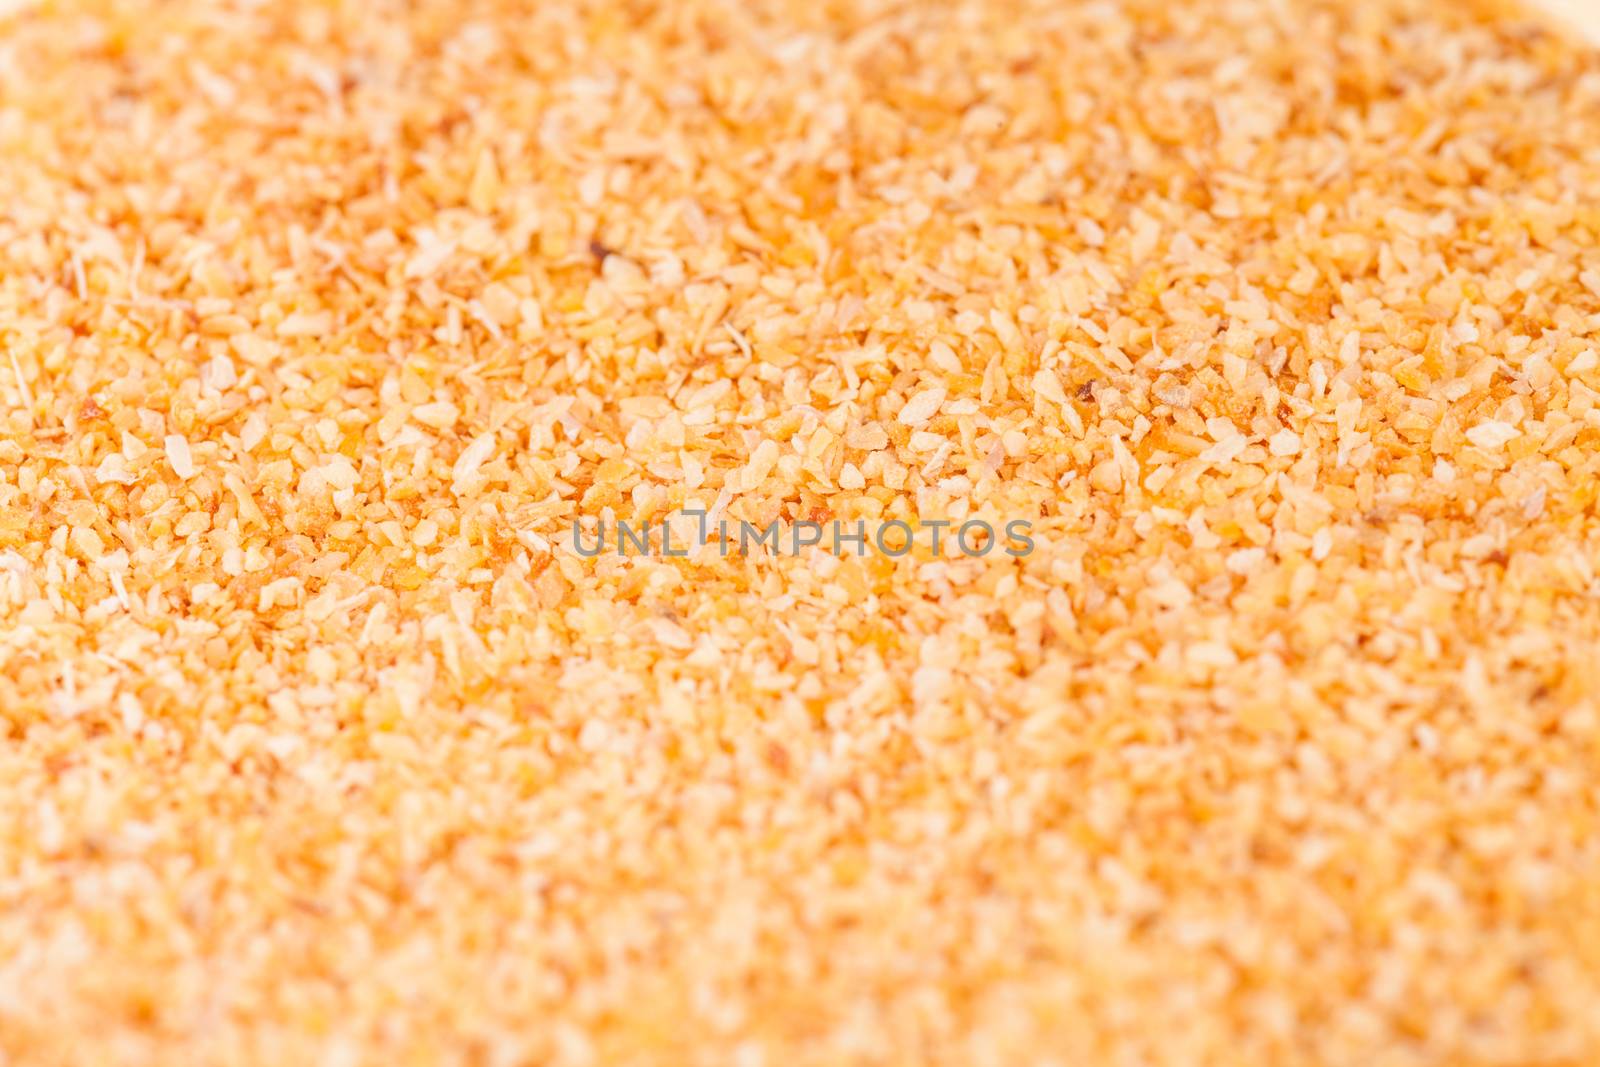 Garlic Powder Texture by aetb